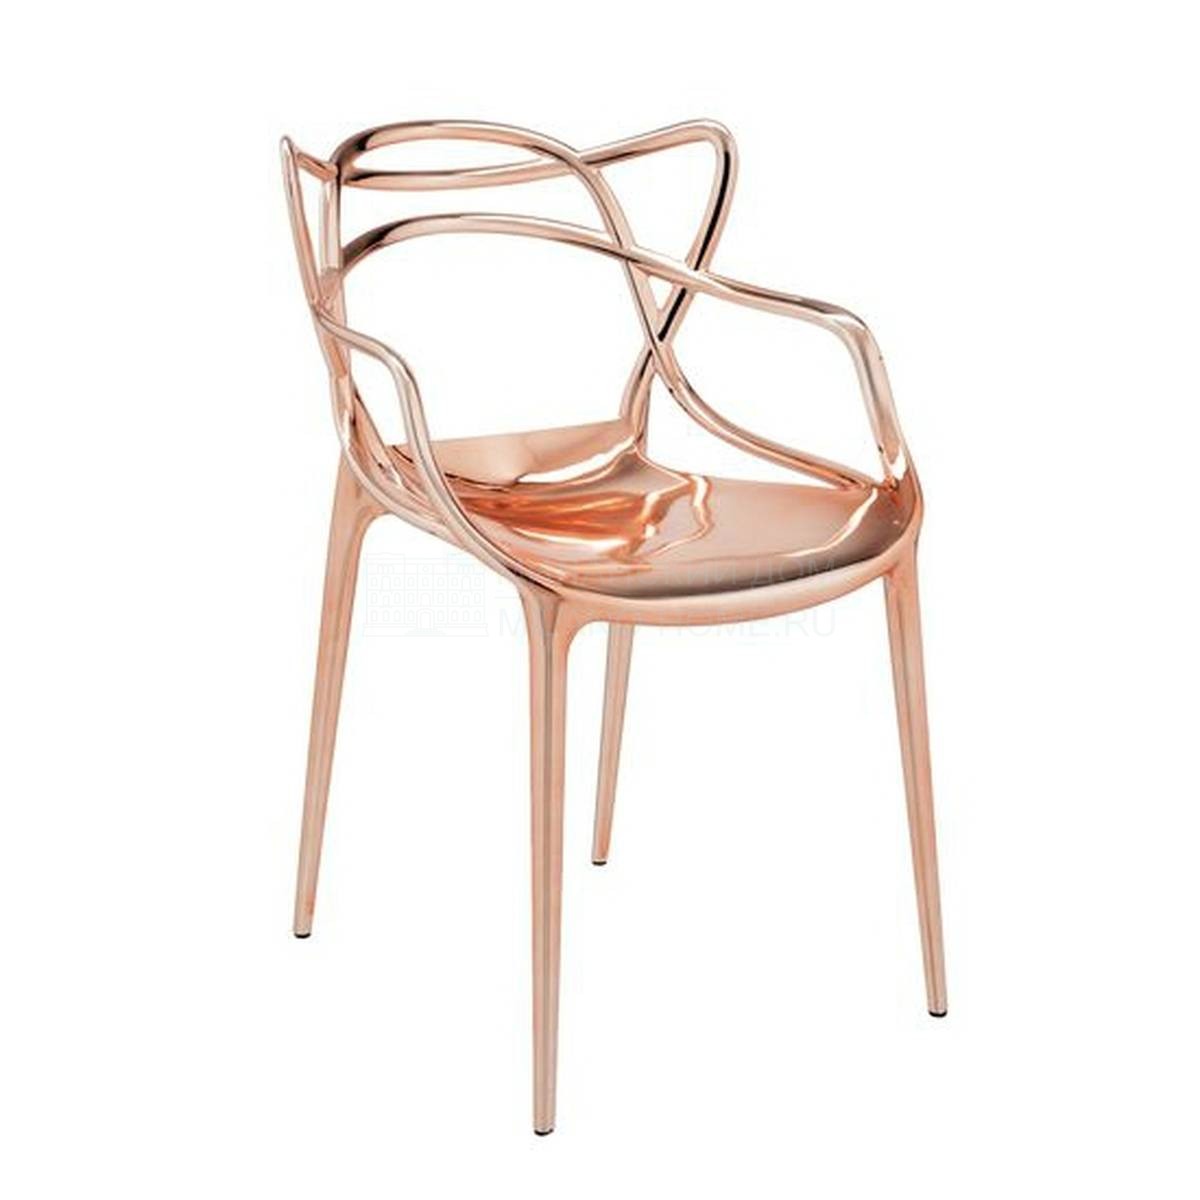 Металлический / Пластиковый стул Masters из Италии фабрики KARTELL